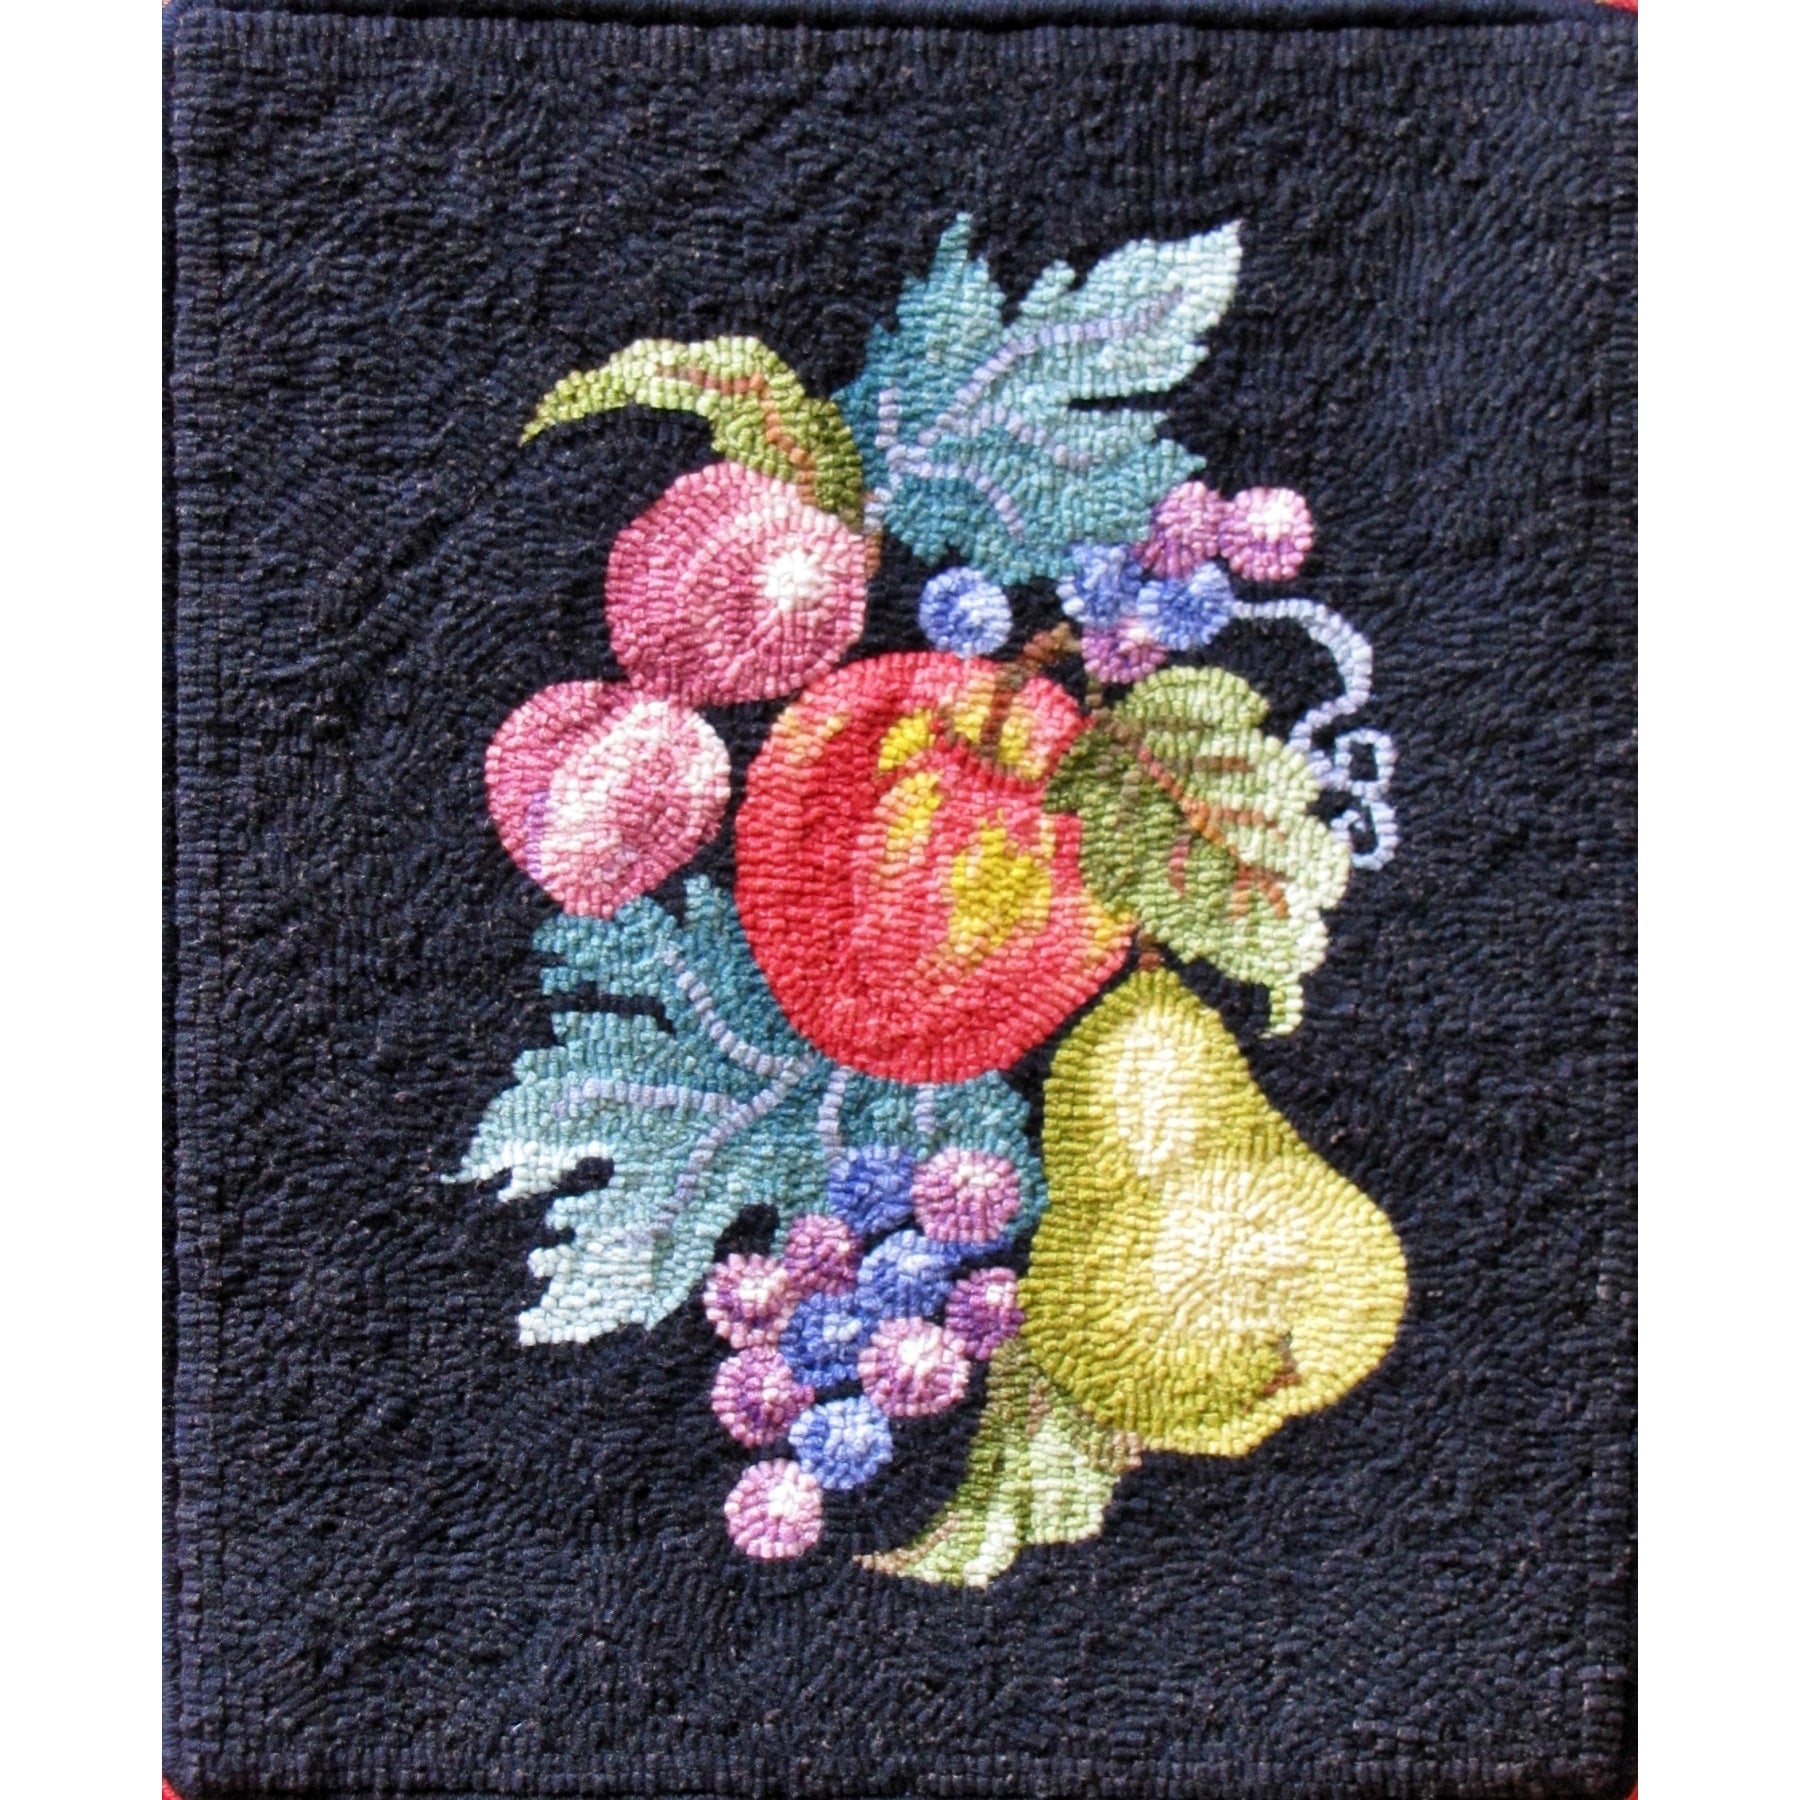 Fruit, rug hooked by Nancy Terhaar